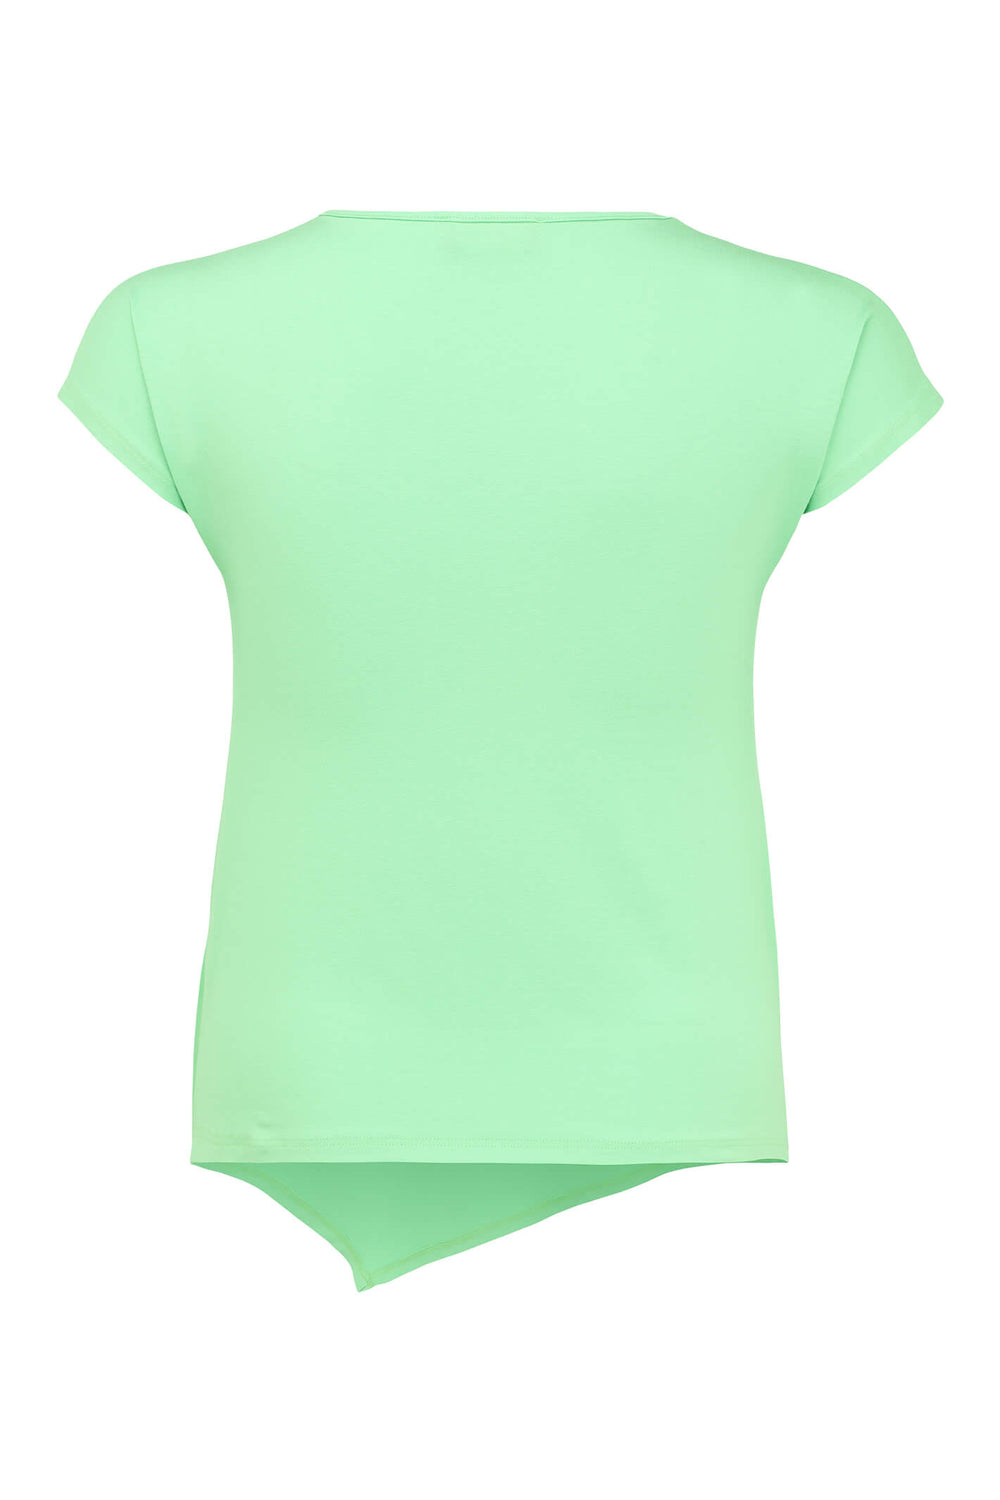 Doris Streich 501 270 70 Mint Green Asymmetric Hem T-Shirt - Shirley Allum Boutique